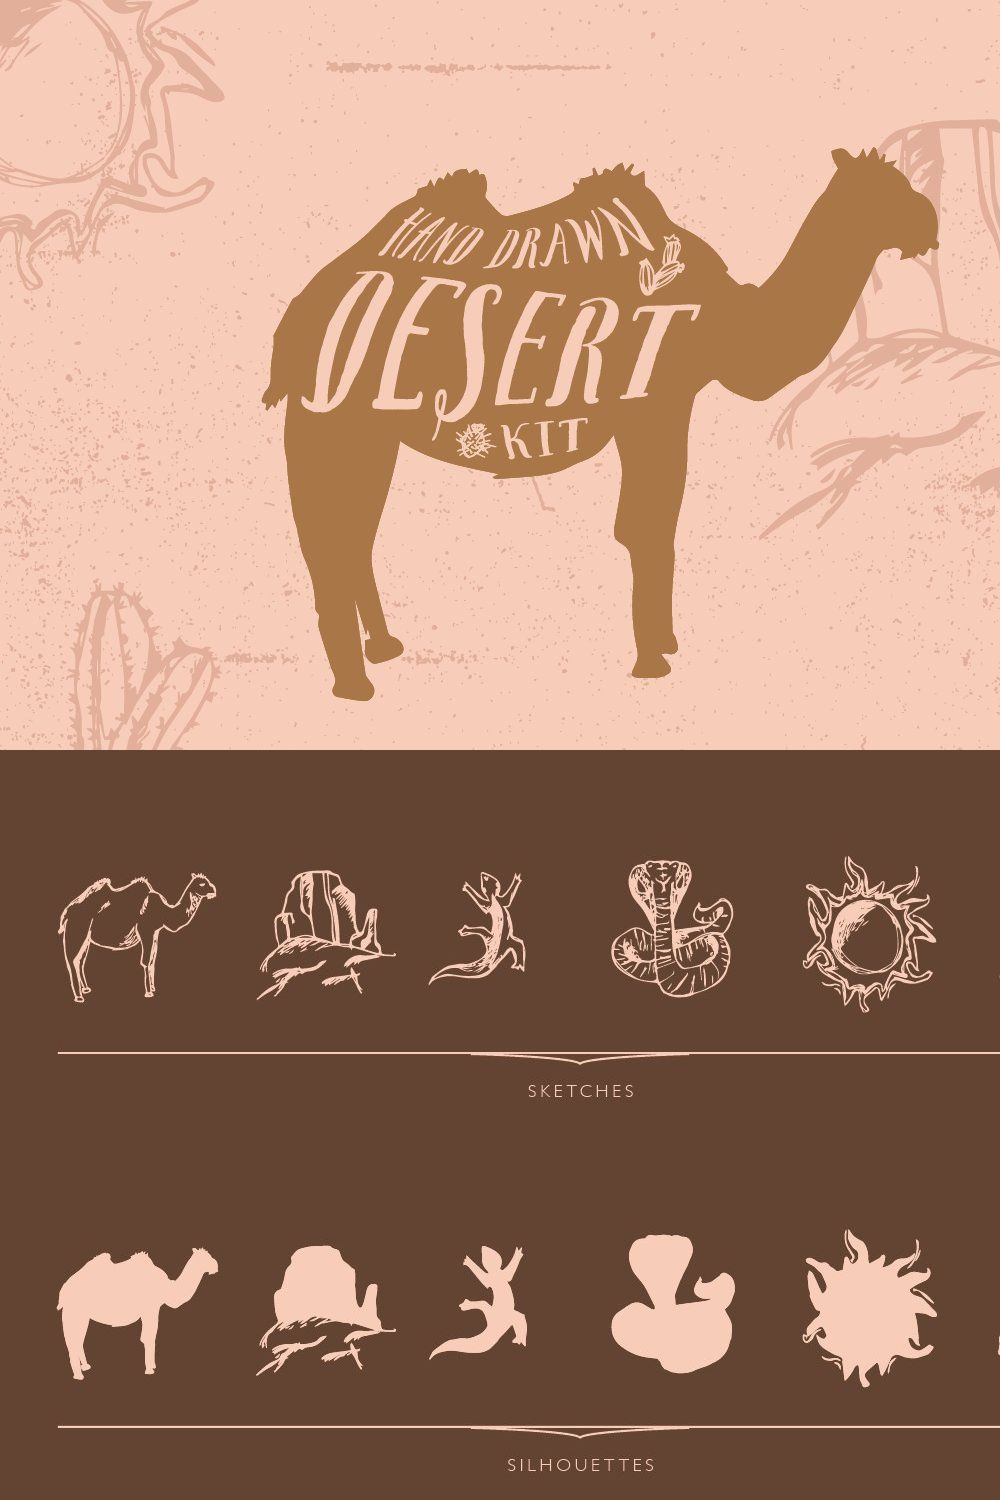 Desert Kit pinterest preview image.